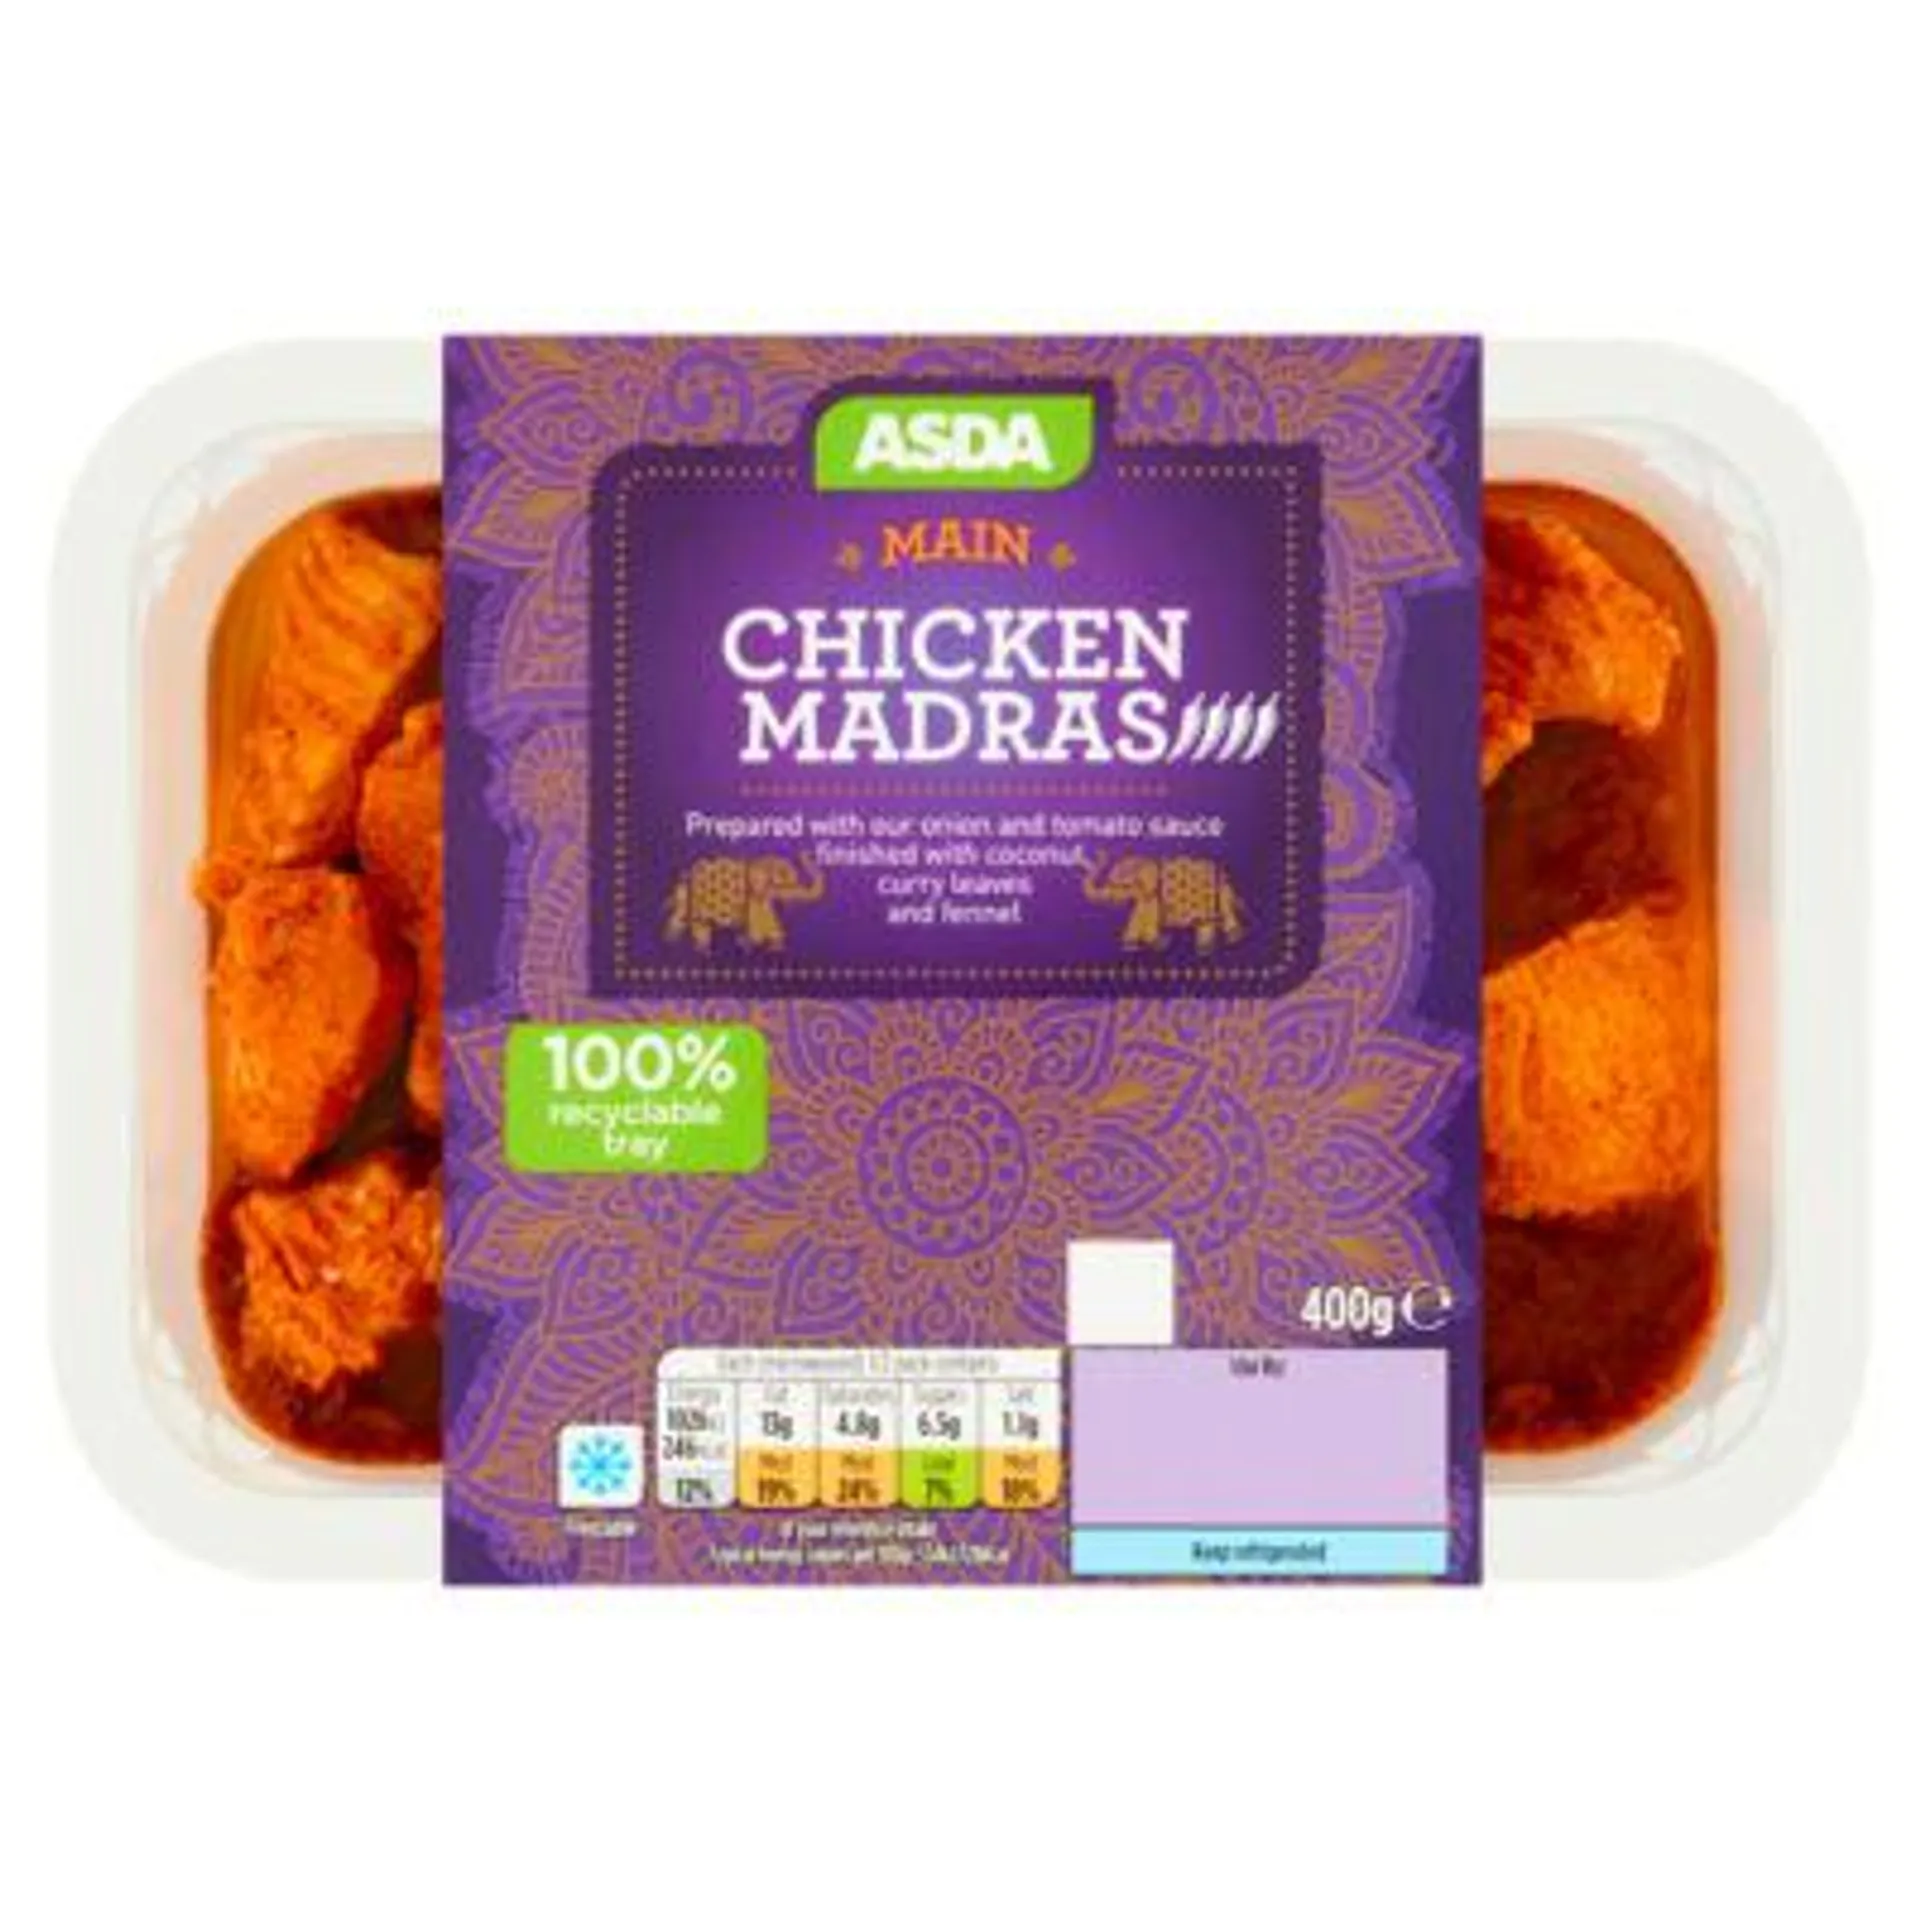 ASDA Chicken Madras